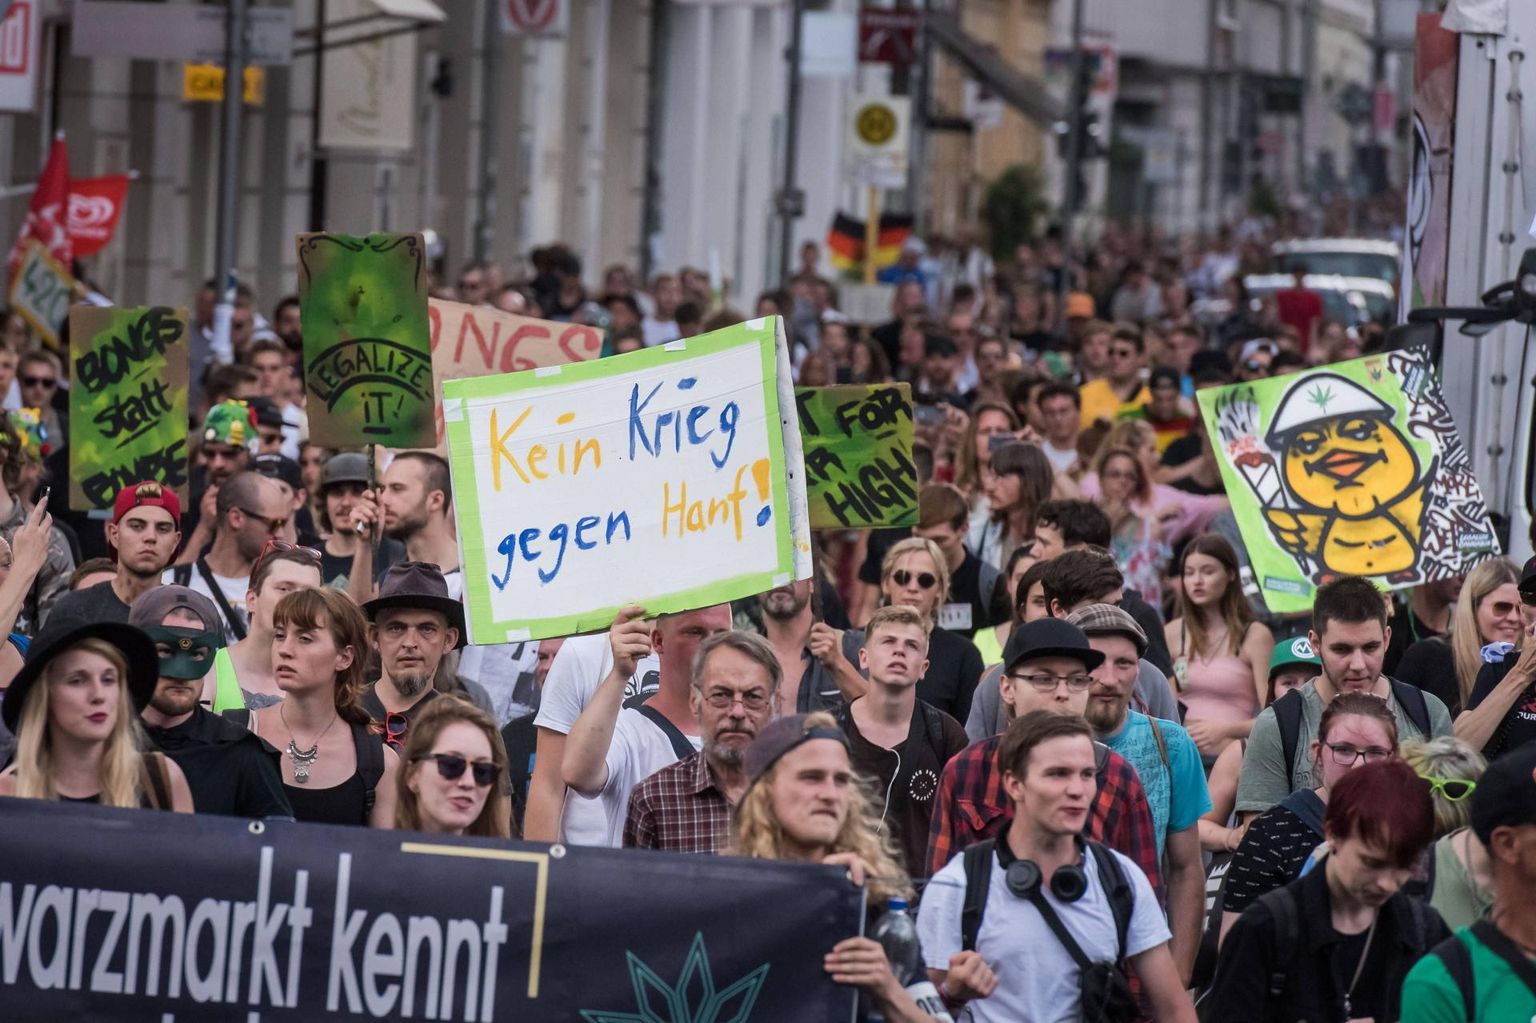 Alates 1997. aastast toimub Saksamaa pealinnas Berliinis iga aasta augustikuus meeleavaldus, kus nõutakse kanepi seadustamist. Fotol 2019. aasta paraad, kus kutsuti üles lõpetama sõda kanepi vastu